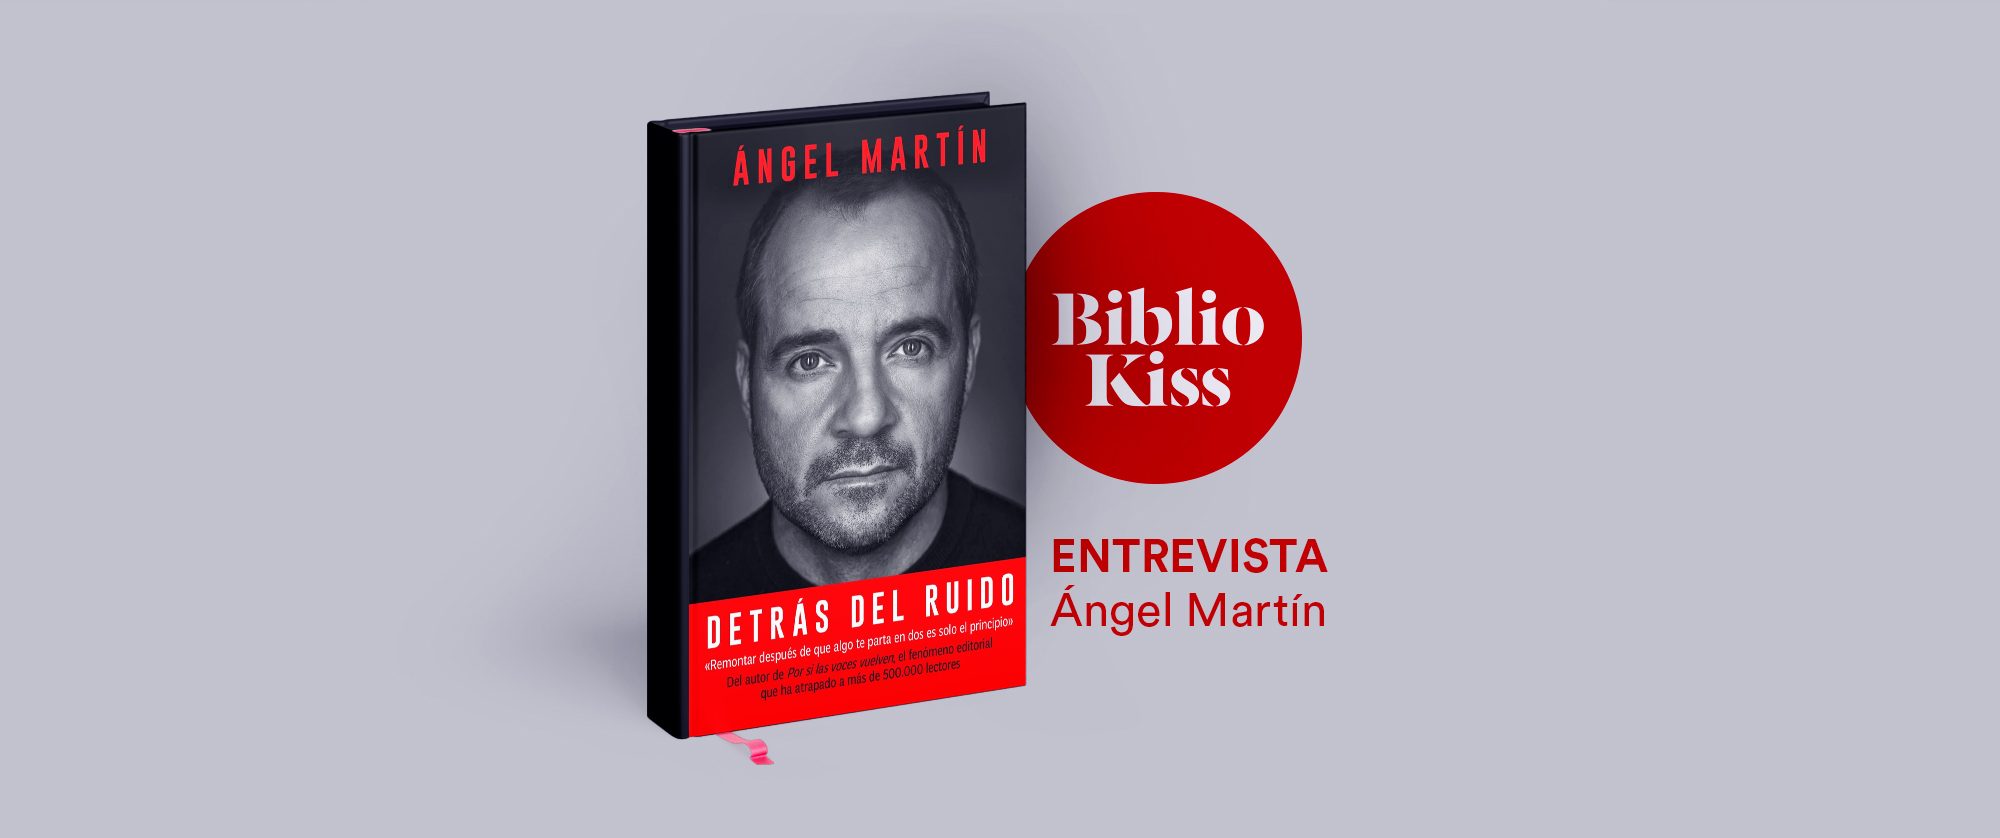 Ángel Martín llega este martes a Córdoba con su libro 'Detrás del ruido':  Por imposible que parezca la remontada, se puede salir